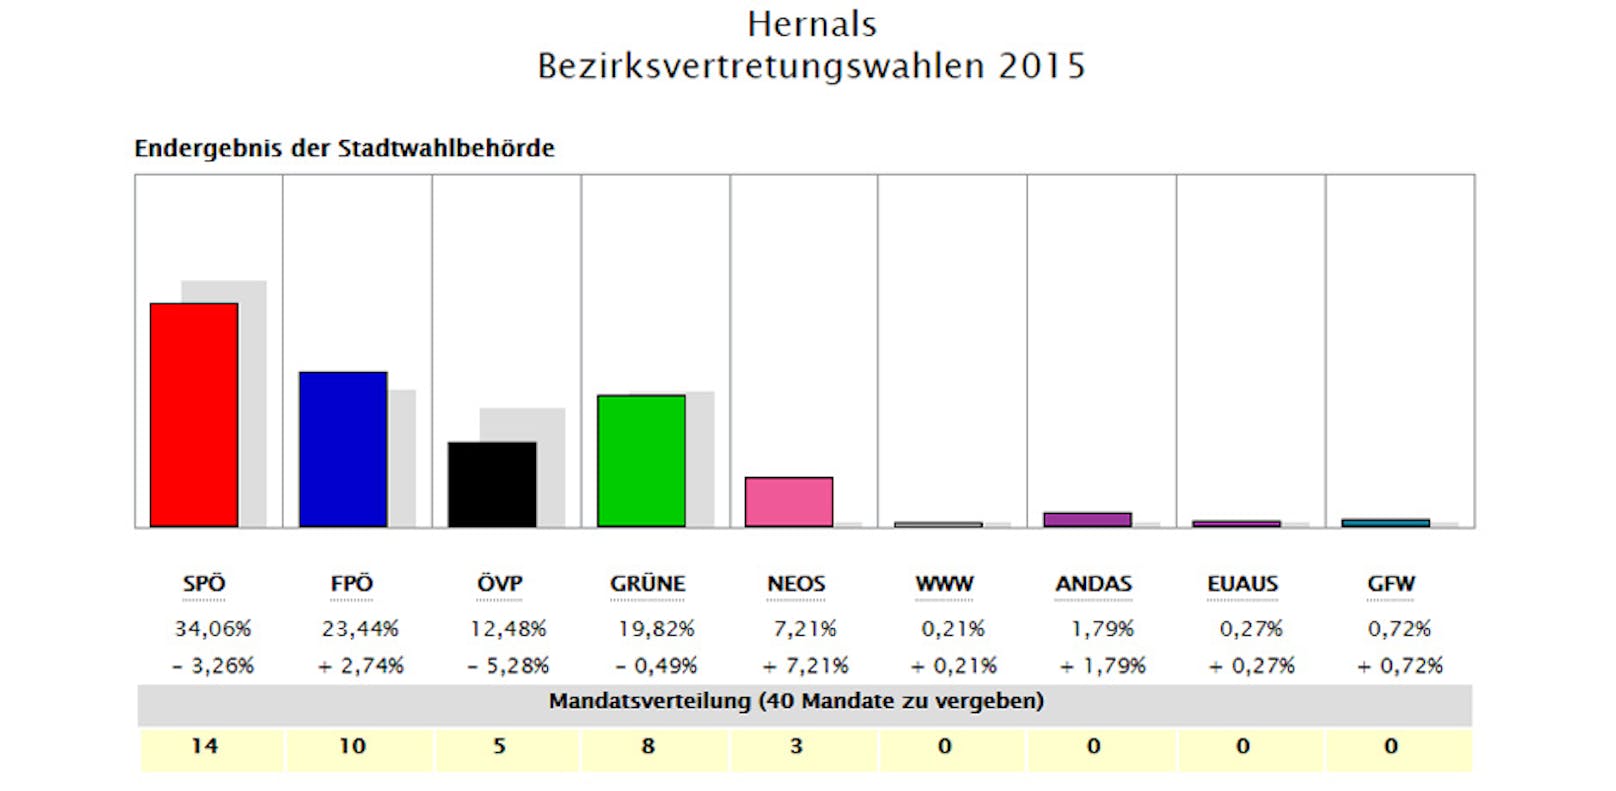 Das Ergebnis in Hernals 2015